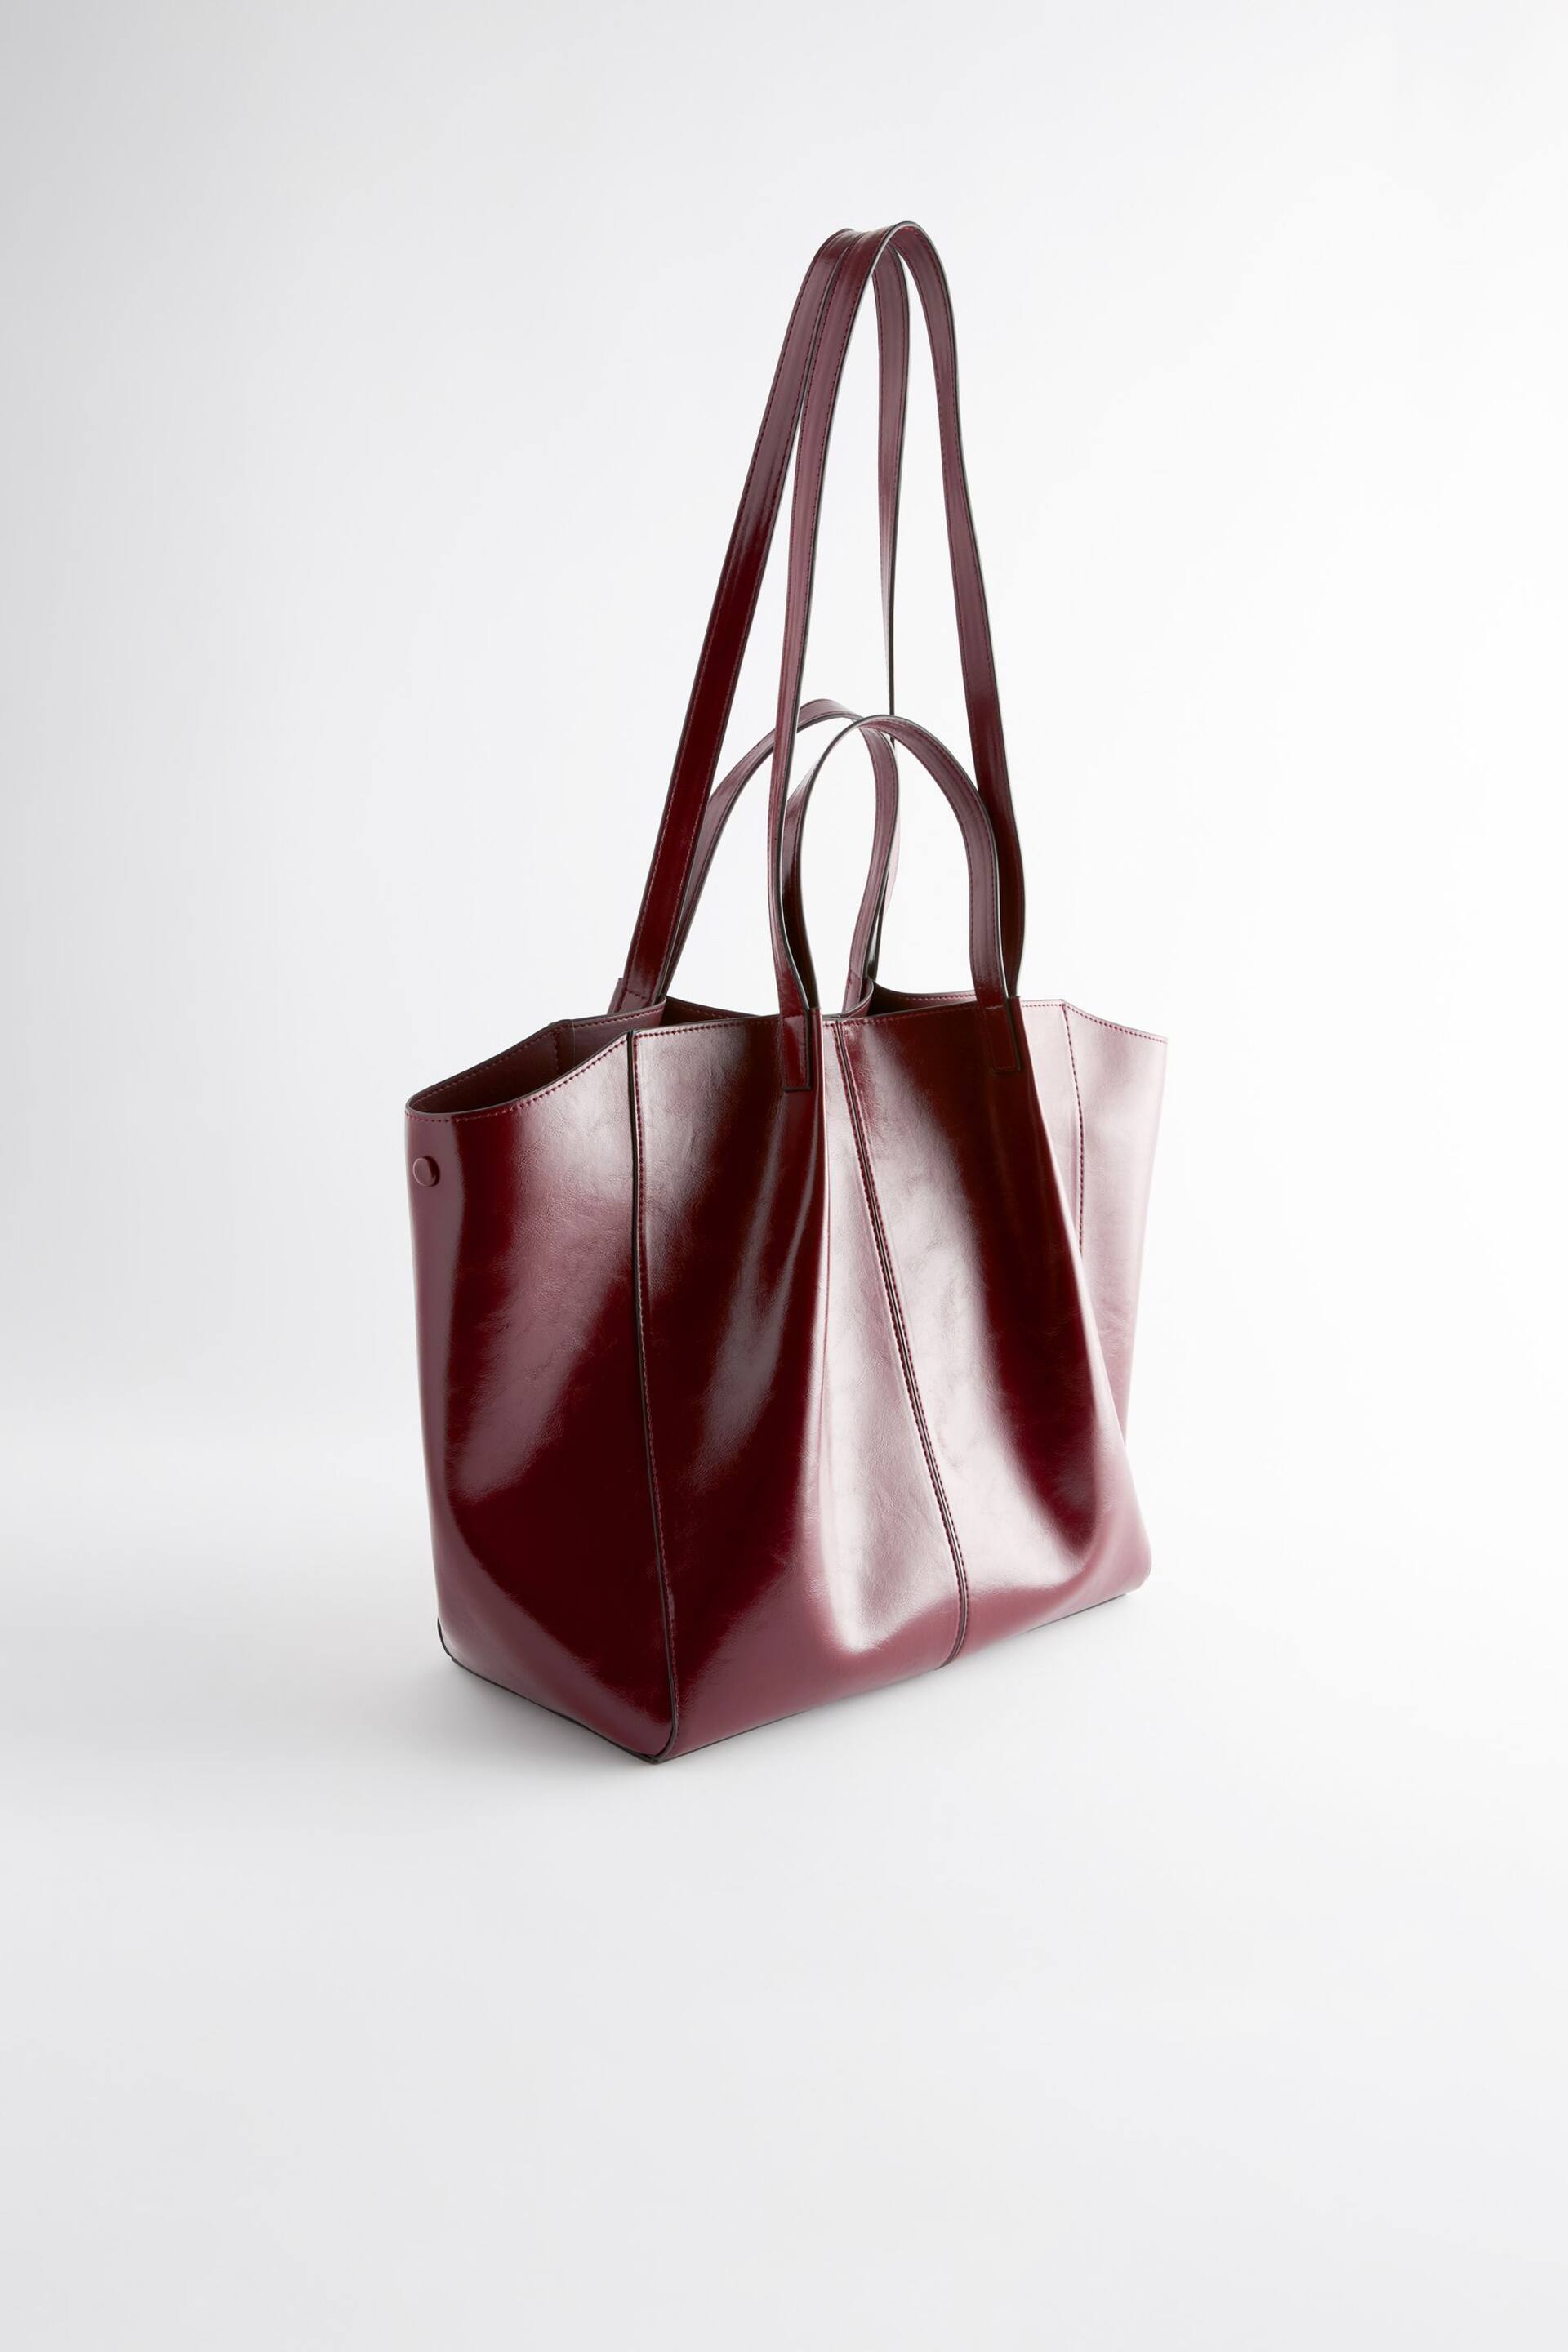 Burgundy Red Shopper Bag - Image 6 of 9